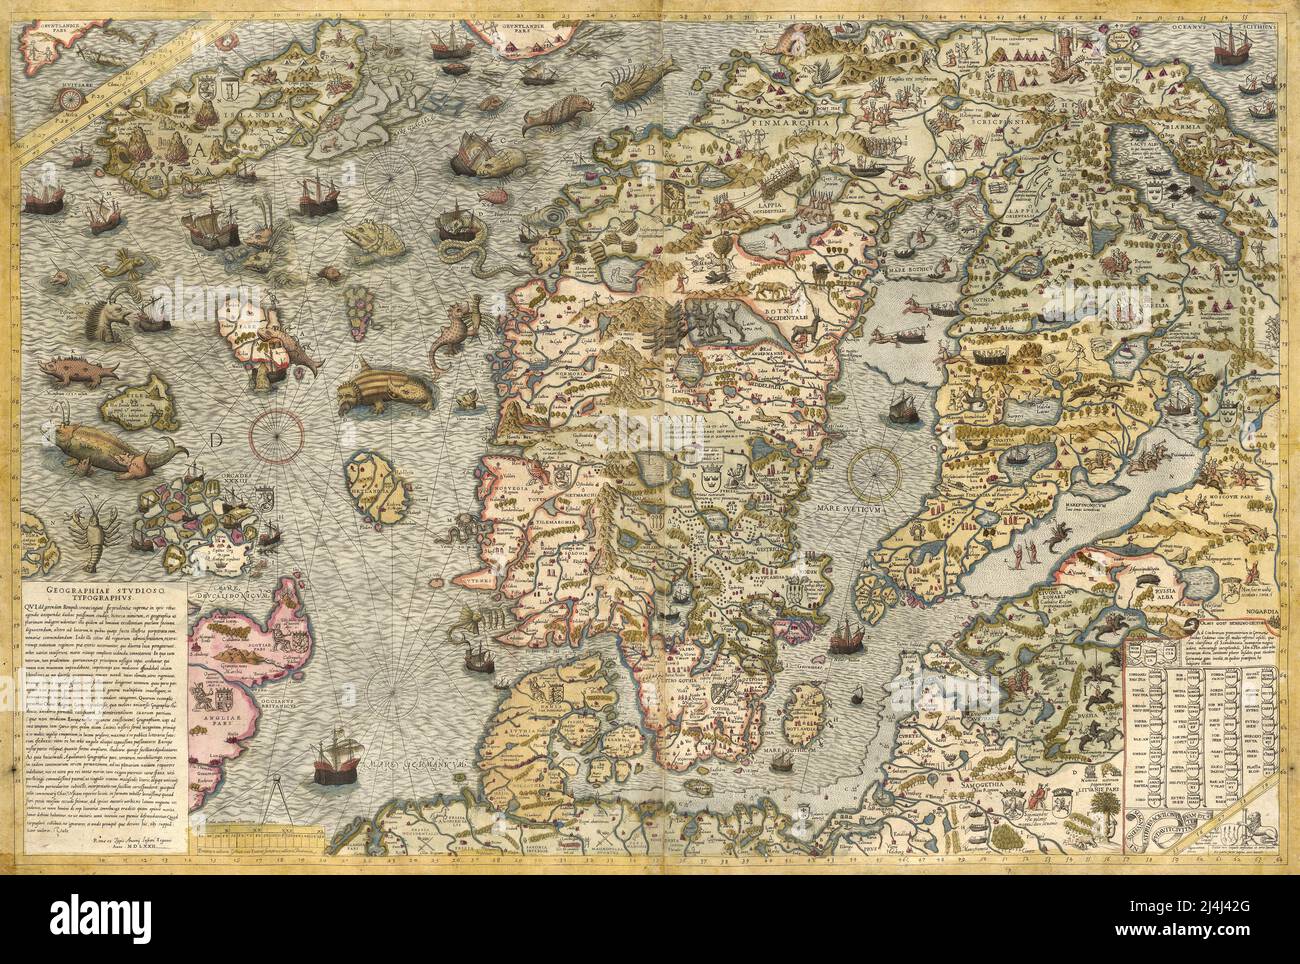 XVI secolo carta illustrata della penisola scandinava di Olaus Magnus Foto Stock